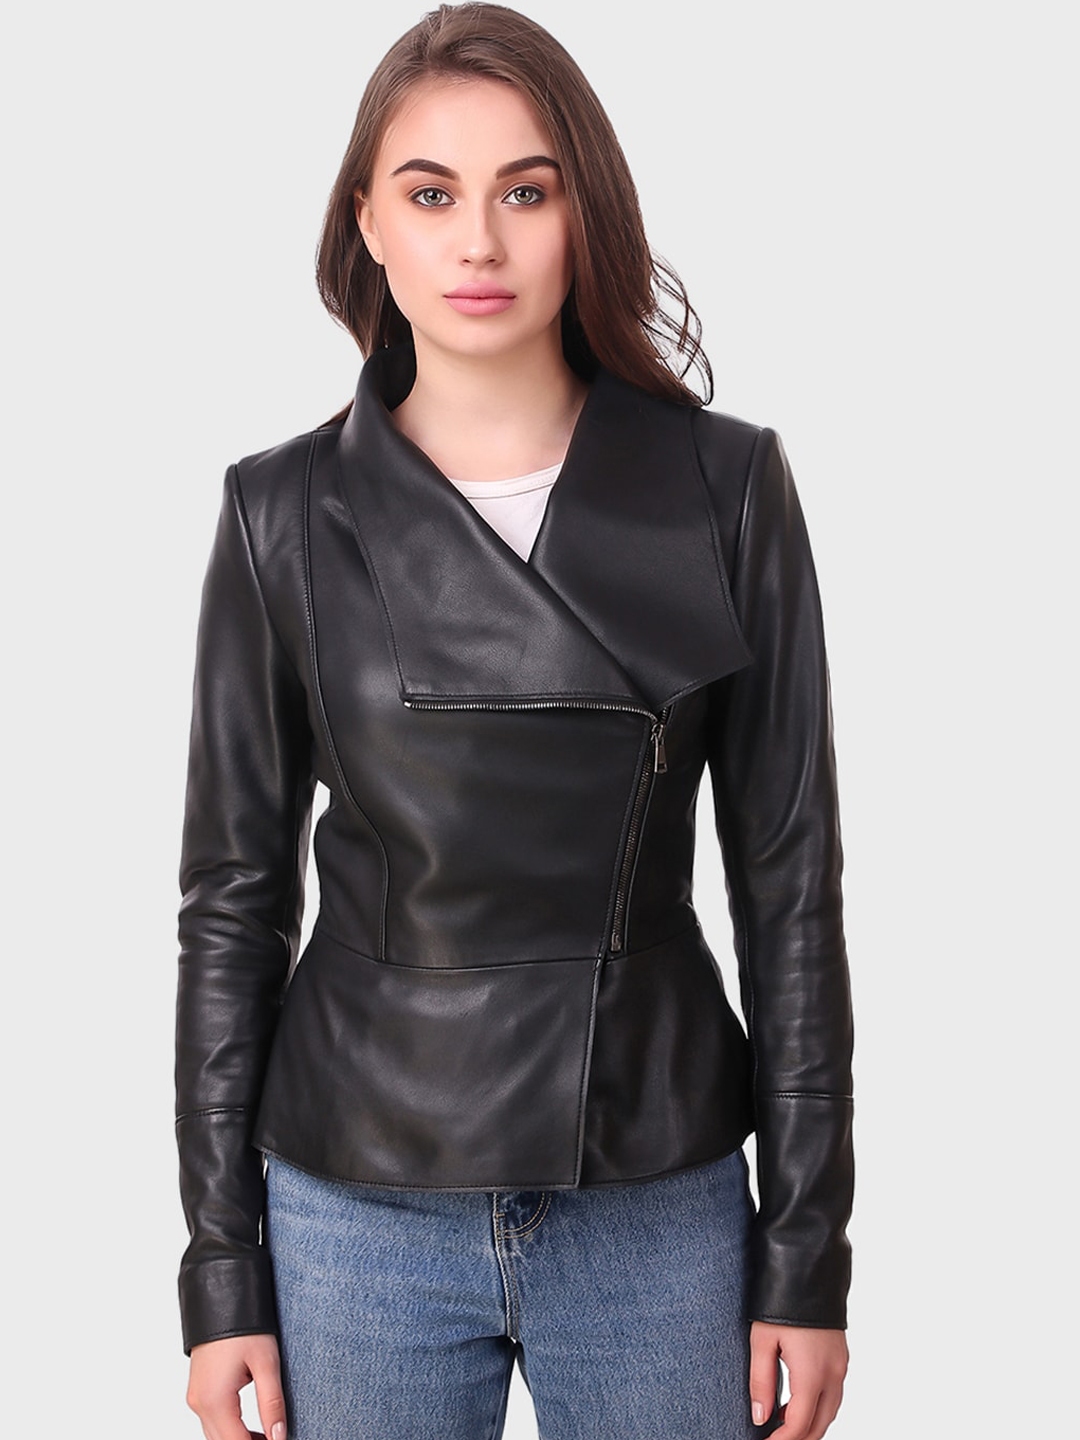 Buy Echt Women Black Solid Leather Jacket - Jackets for Women 12943630 ...